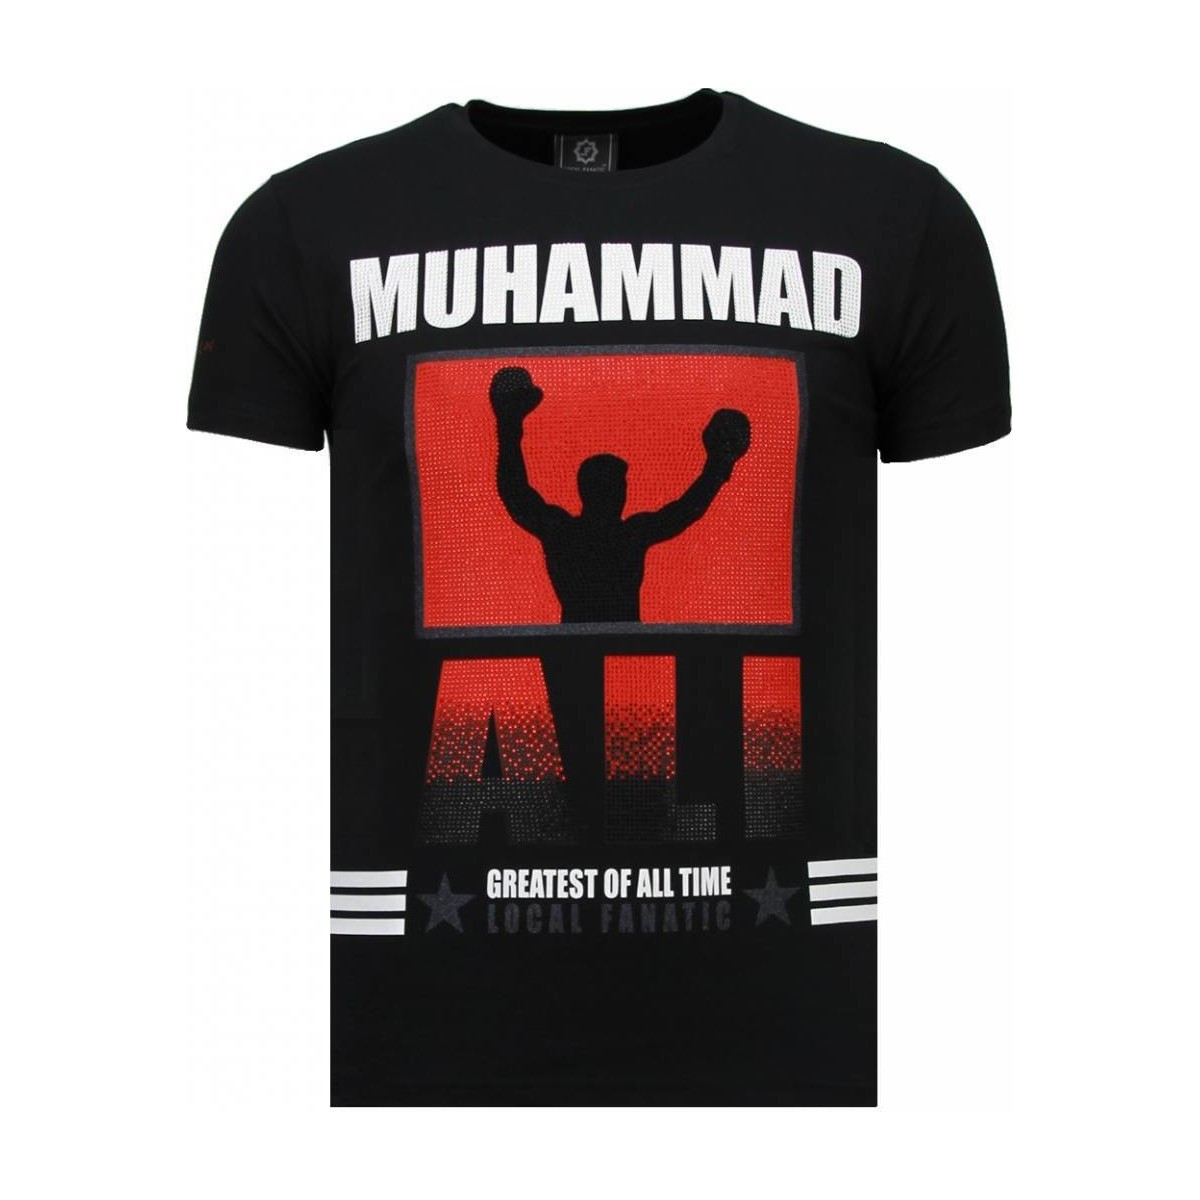 textil Herr T-shirts Local Fanatic Muhammad Ali Rhinestone Svart